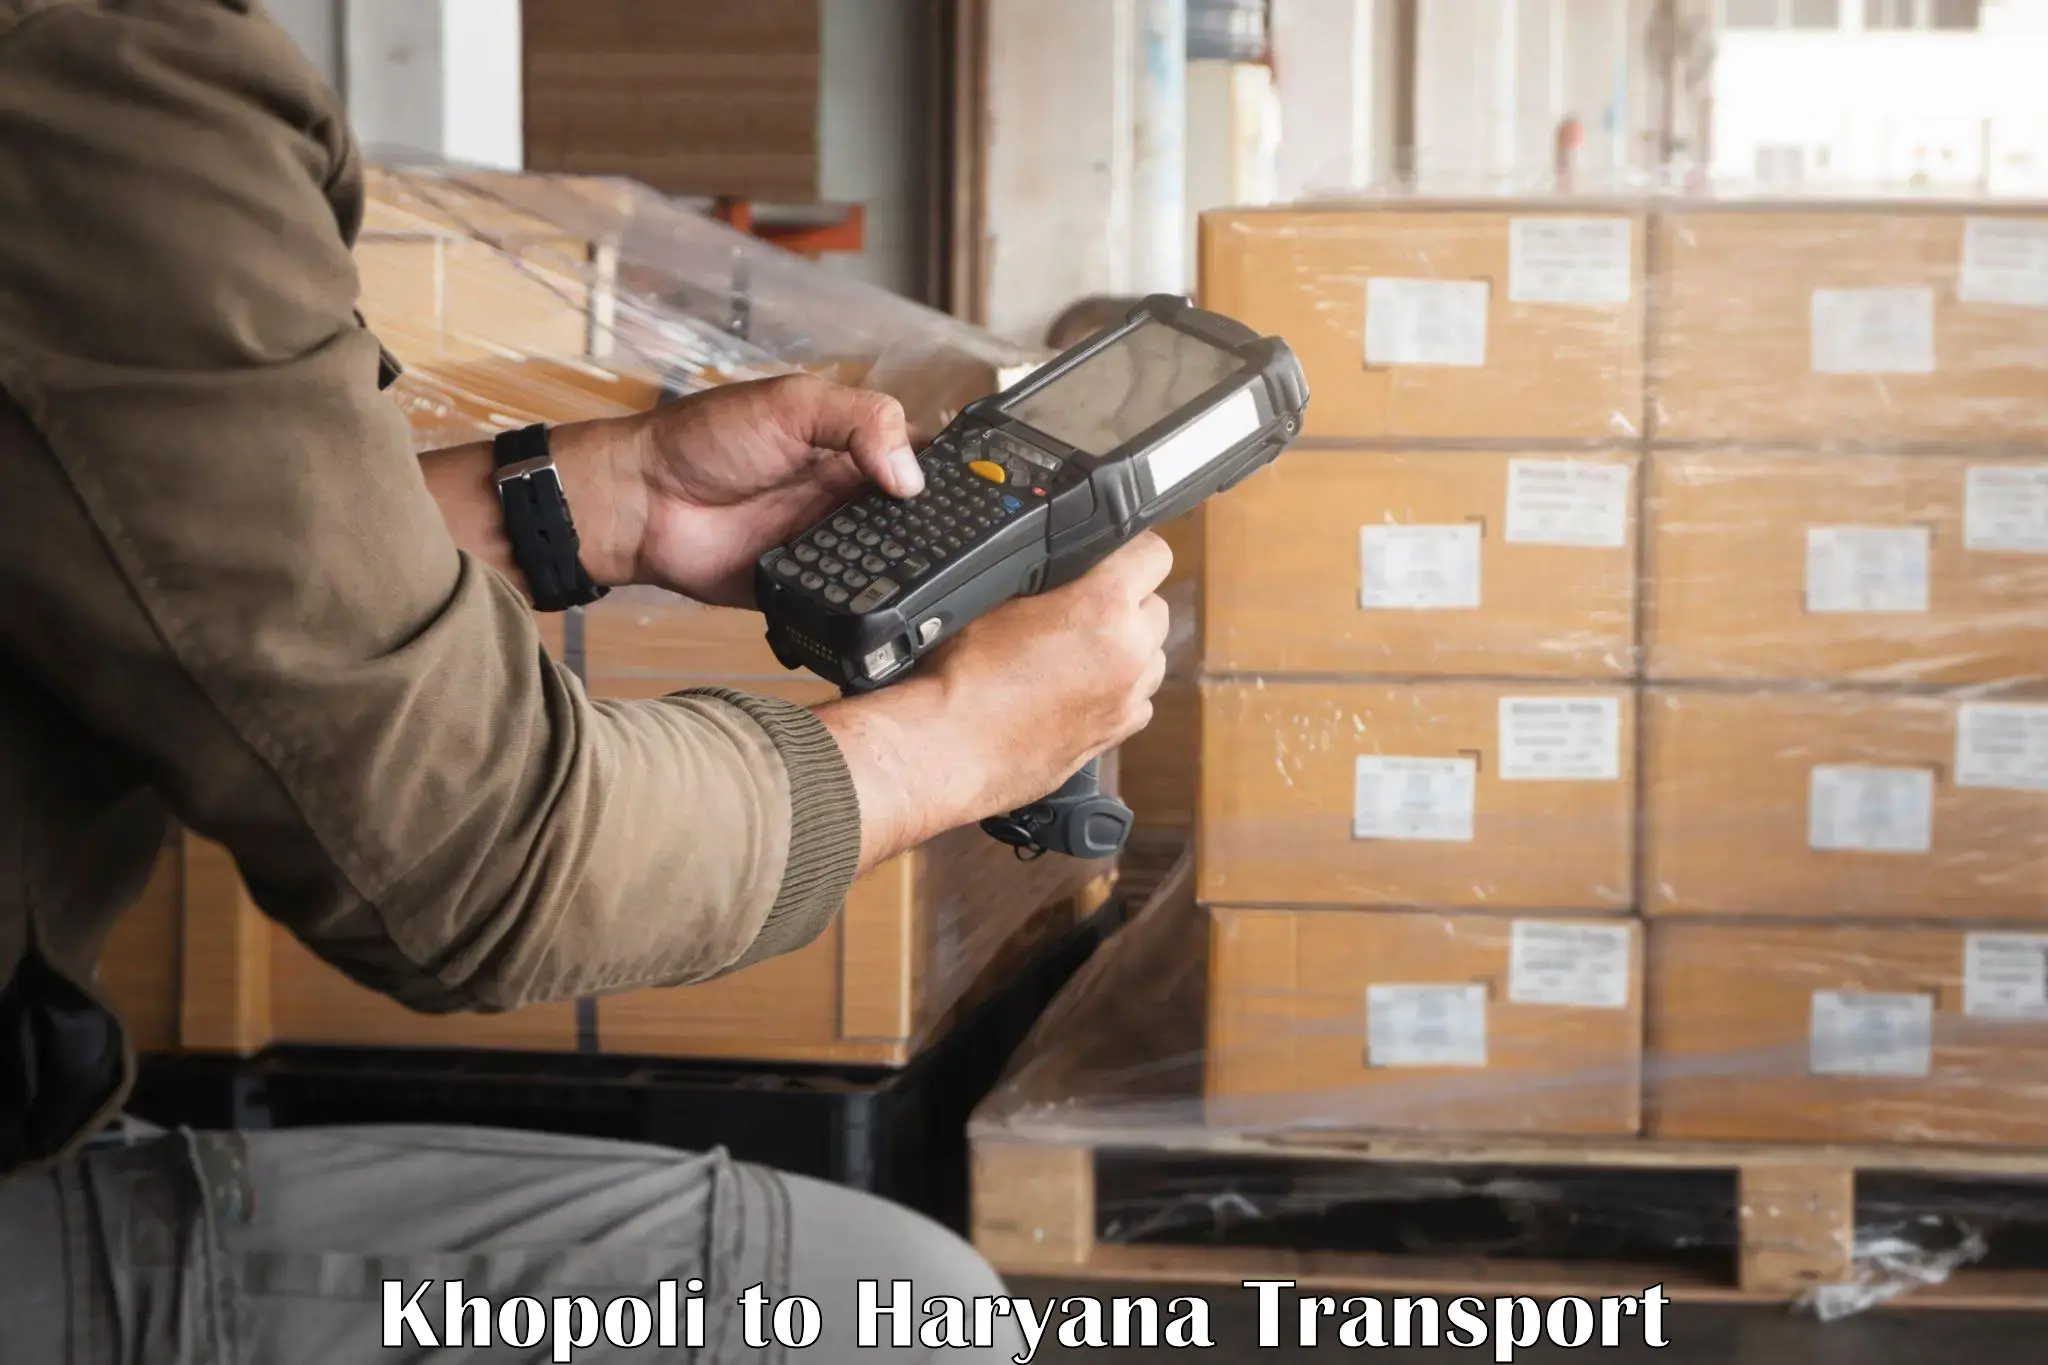 Shipping partner Khopoli to Haryana